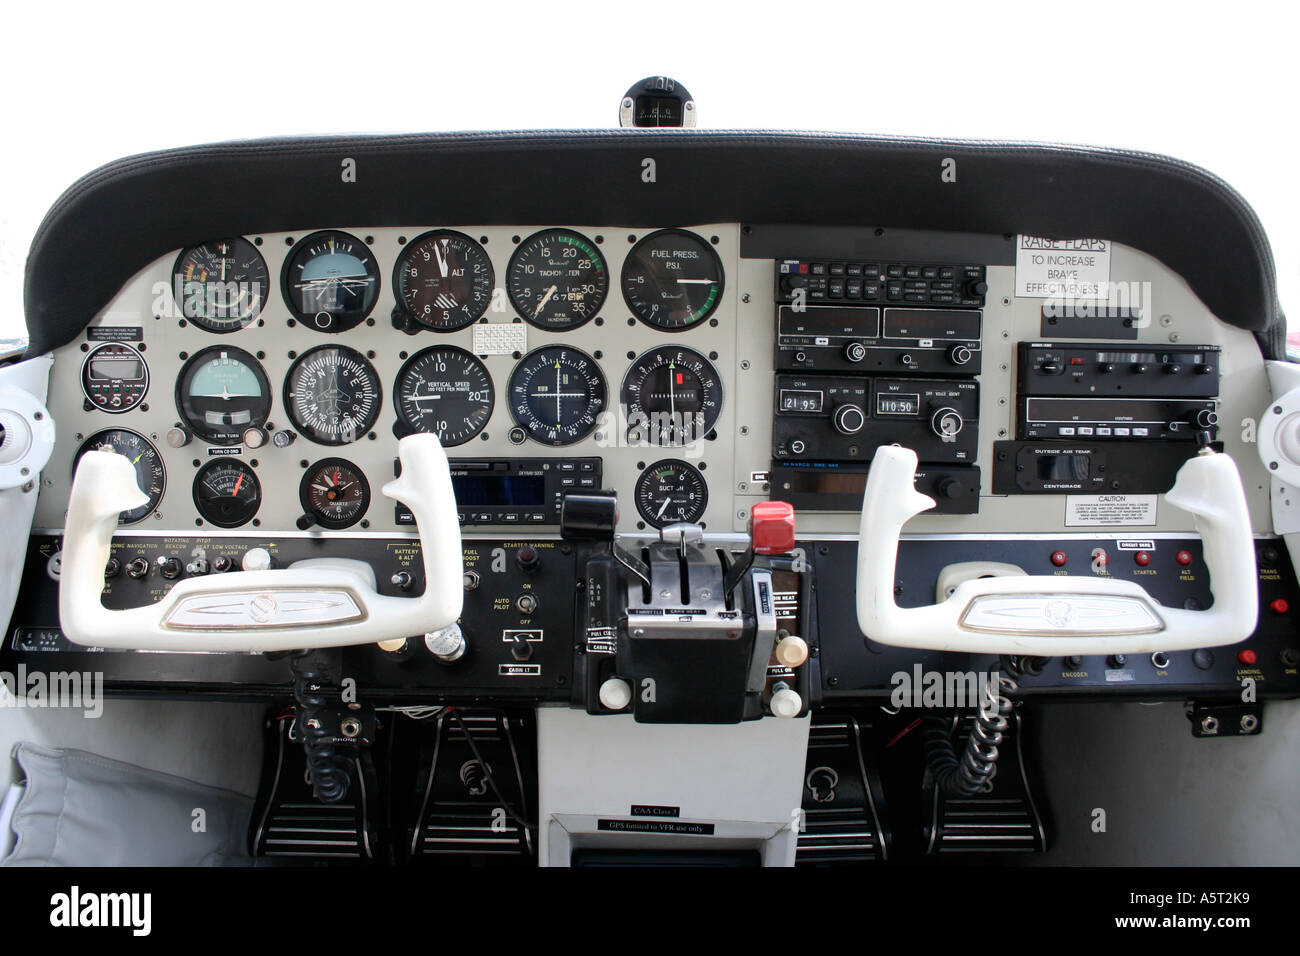 Intérieur de l'aéronef Beechcraft light. Instruments de navigation, de contrôles, d'horloges et cadrans. L'avionique. Avion sur un seul moteur. Banque D'Images